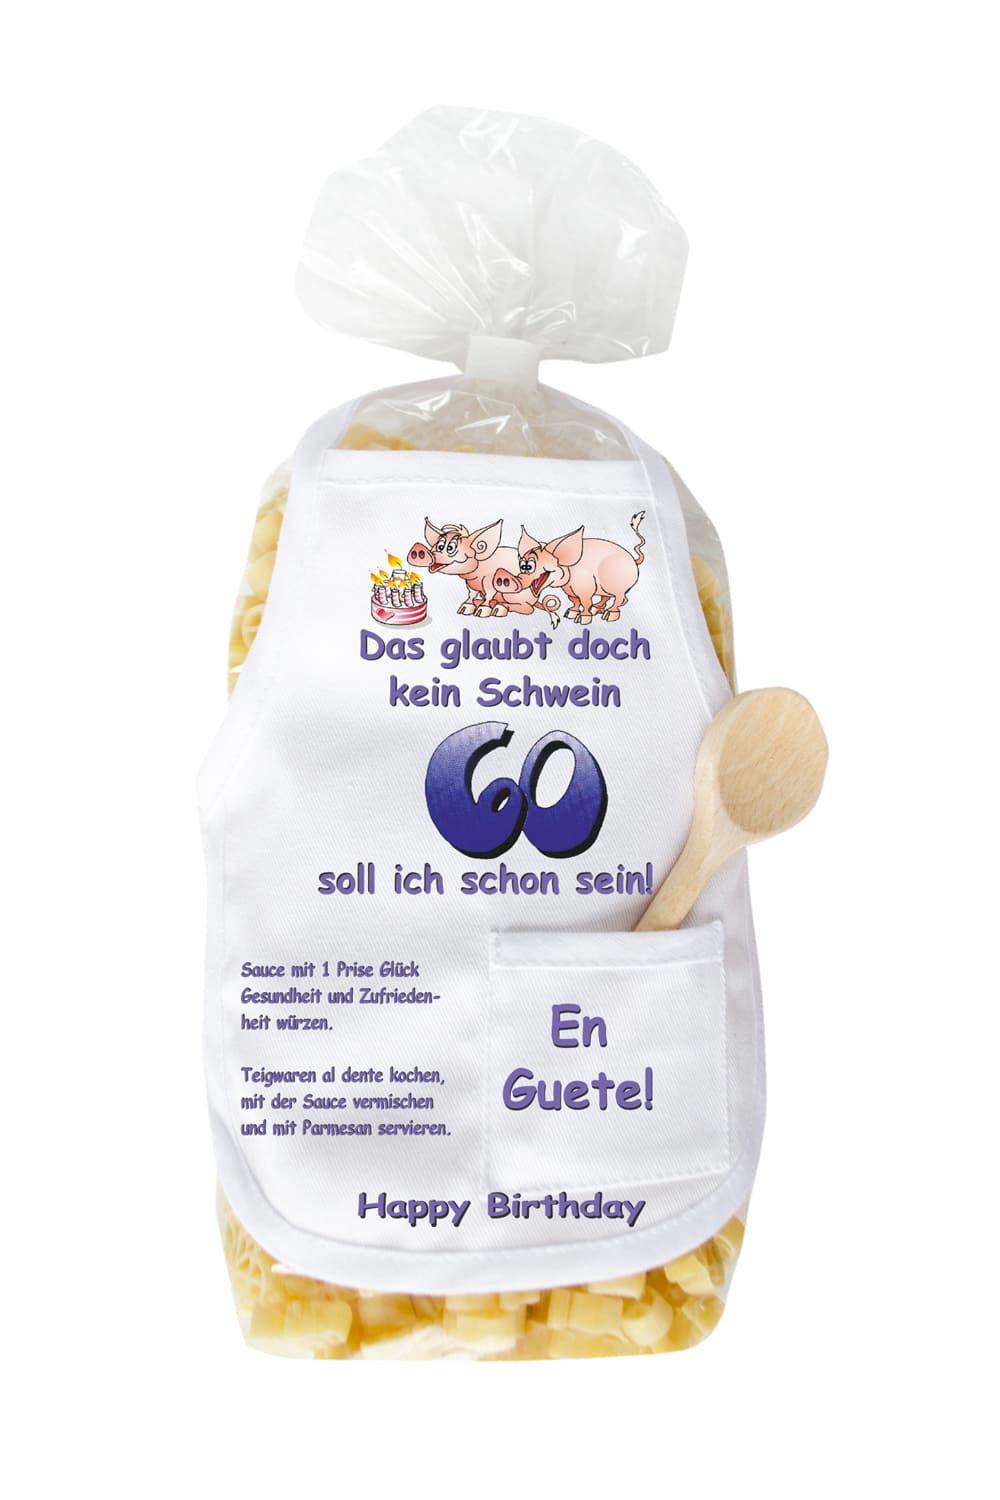 Die Pasta zum 60. Geburtstag sind in Form eines Schweinchen und in einer schoenen Verpackung. Auf der Mini Kochschuerze sind Schweine und eine Torte abgebildet sowie der Spruch: Das glaubt doch kein Schwein, 60 soll ich schon sein. Grossartiges Geburtstagsgeschenk zum 60. Geburtstag. 